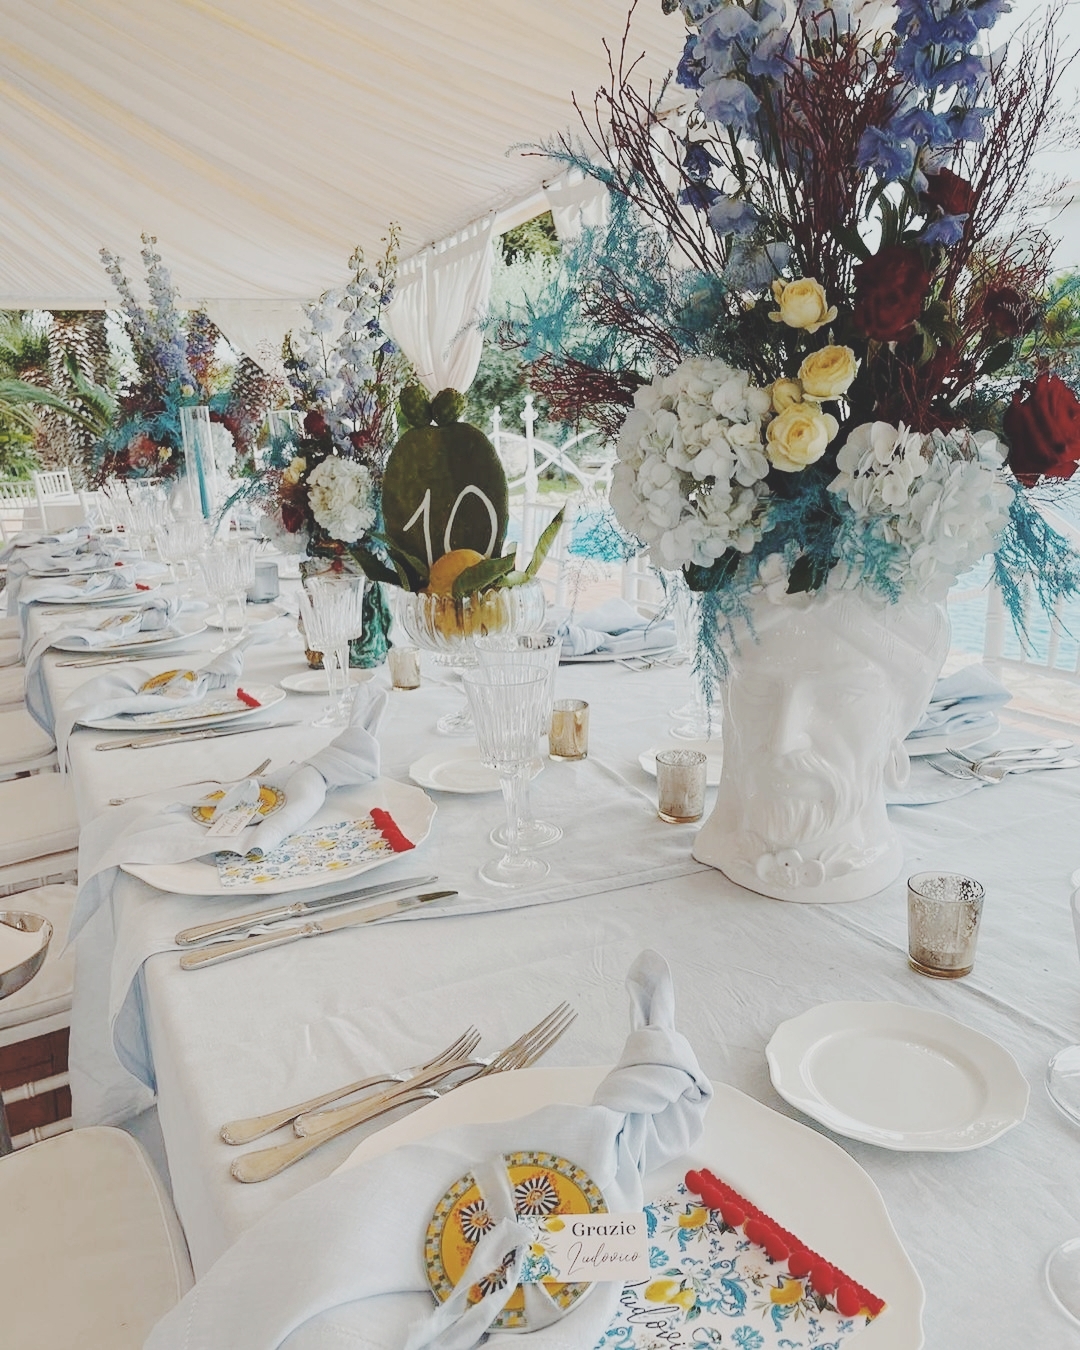 Tavolo imperiale con teste di moro e fiori colorati per compleanno a tema sicilia